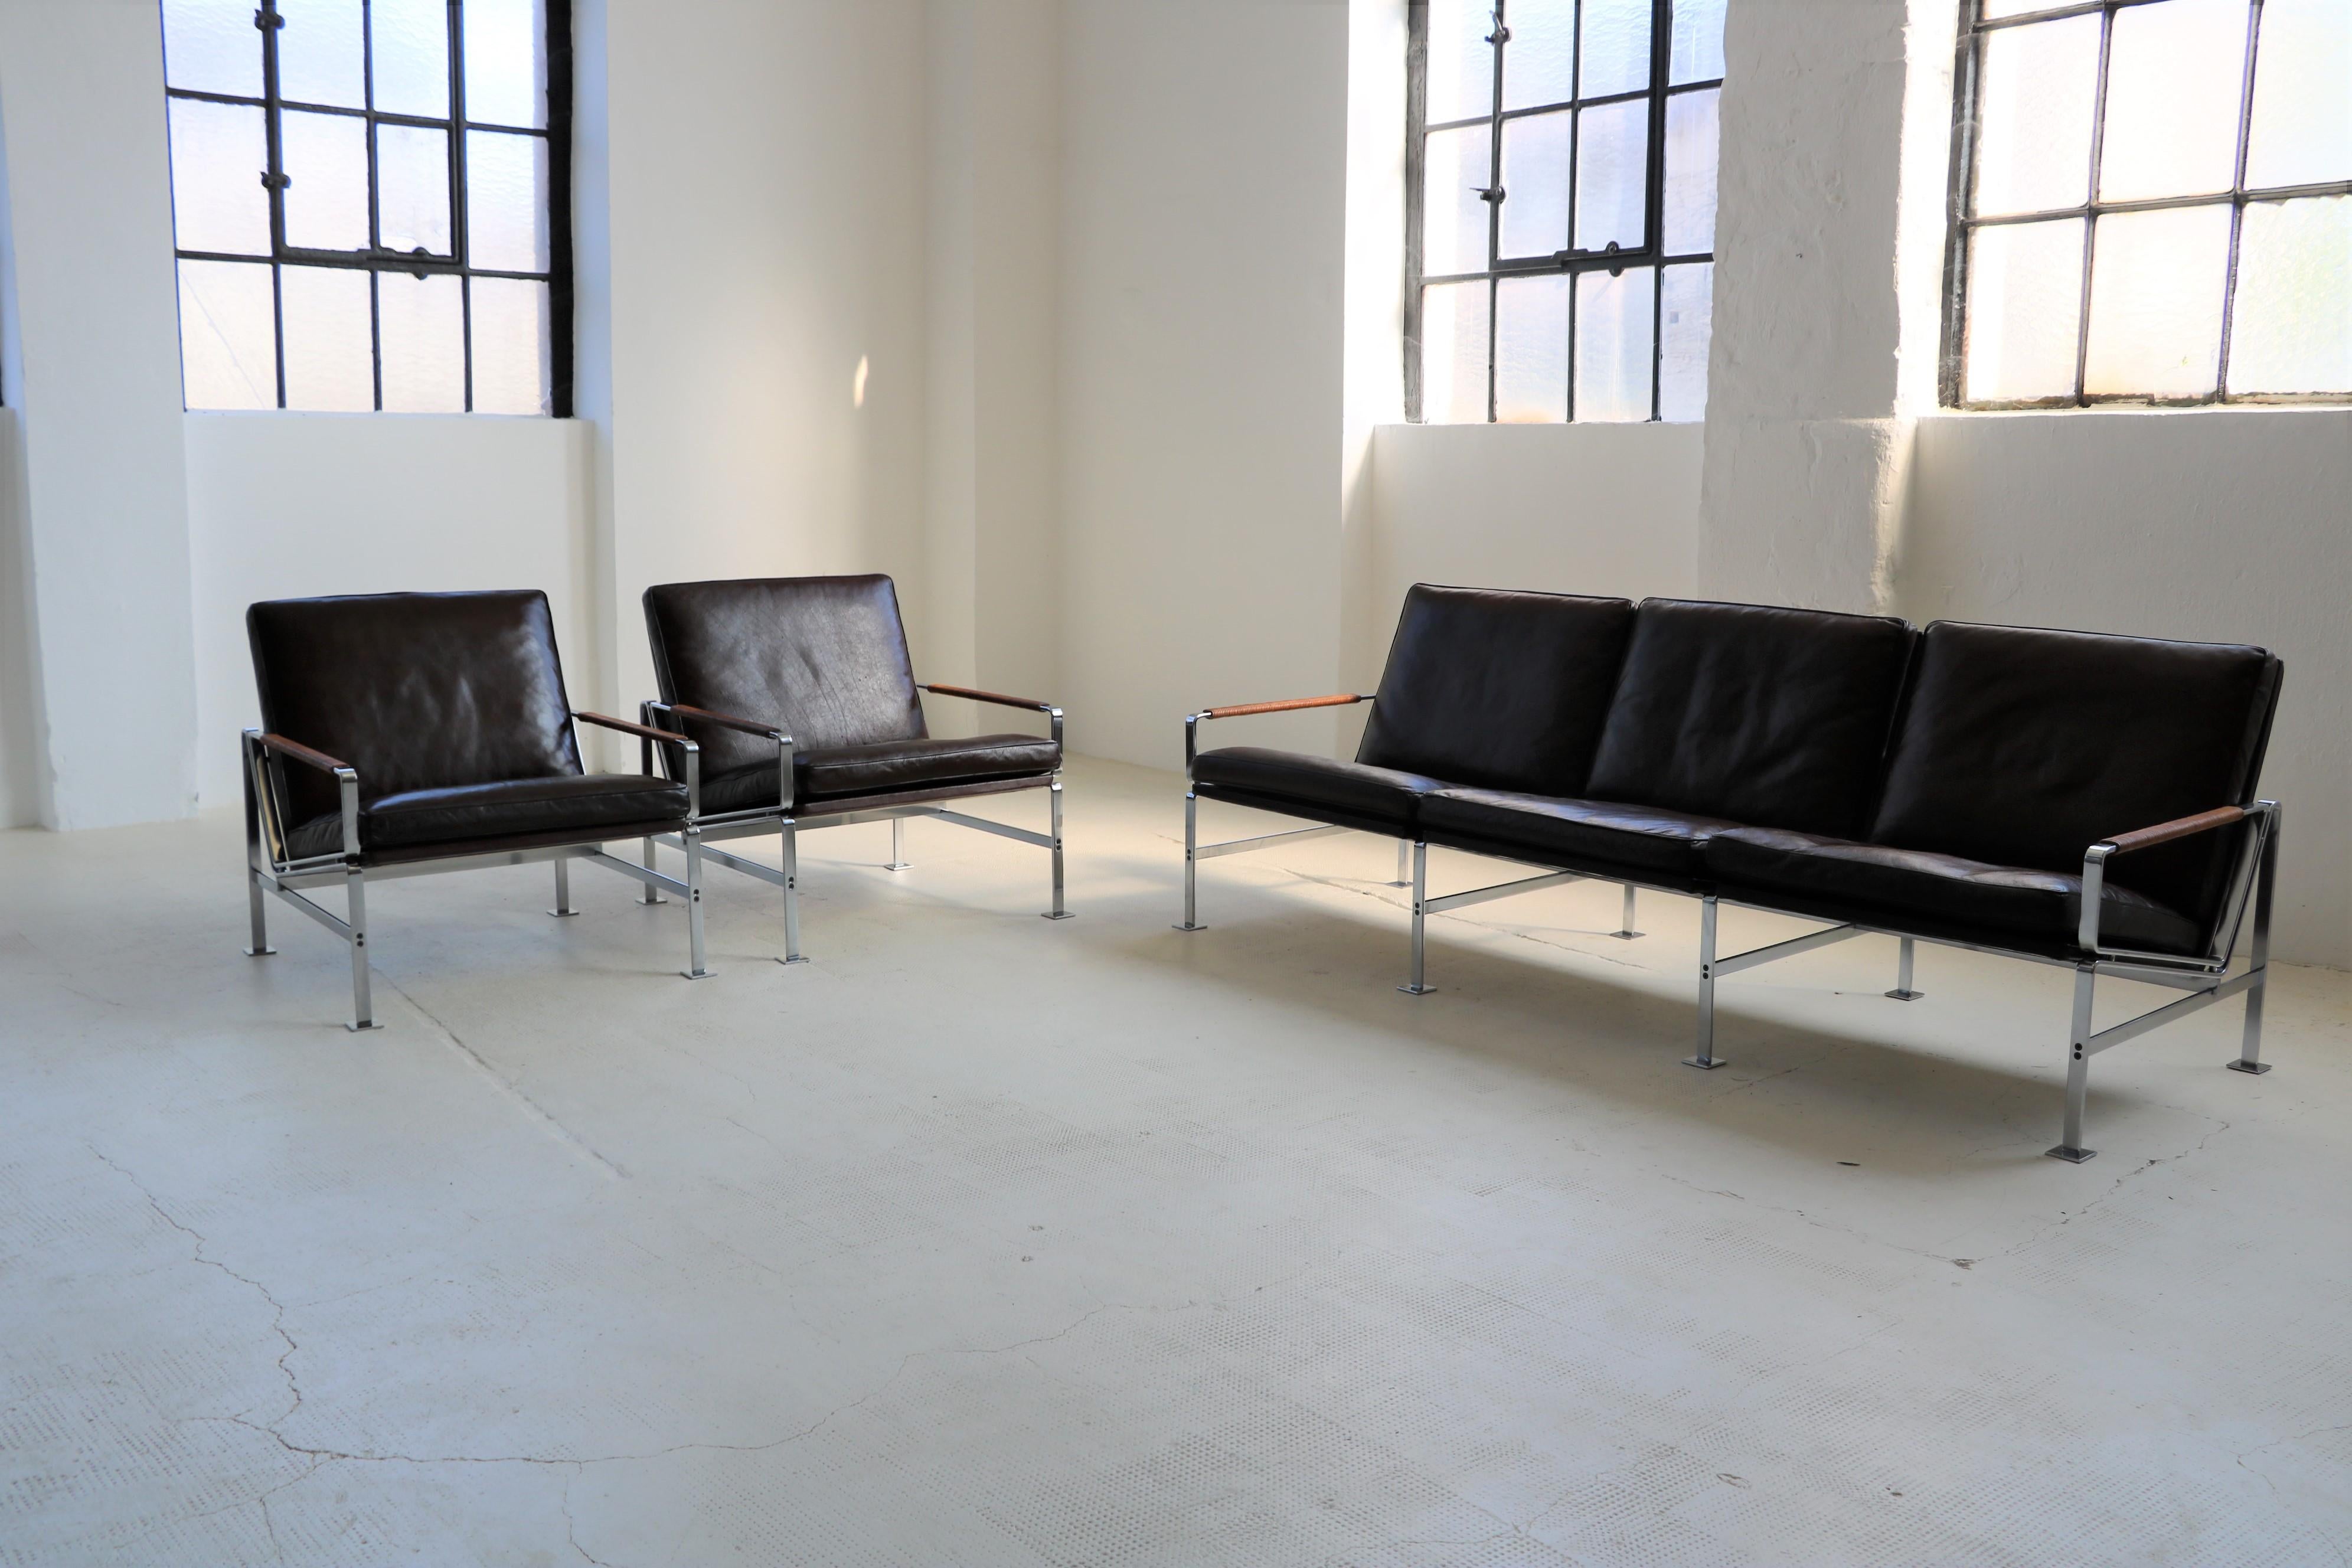 Ein wunderschönes Sesselpaar von den berühmten Designern Preben Fabricius und Jorgen Kastholm für Kill International. 

Gestell Flachstahl, loser Polsterbezug Leder dunkelbraun, Armlehnen lederumwickelt braun, Modell FK 6720.

Dieser Satz ist eine